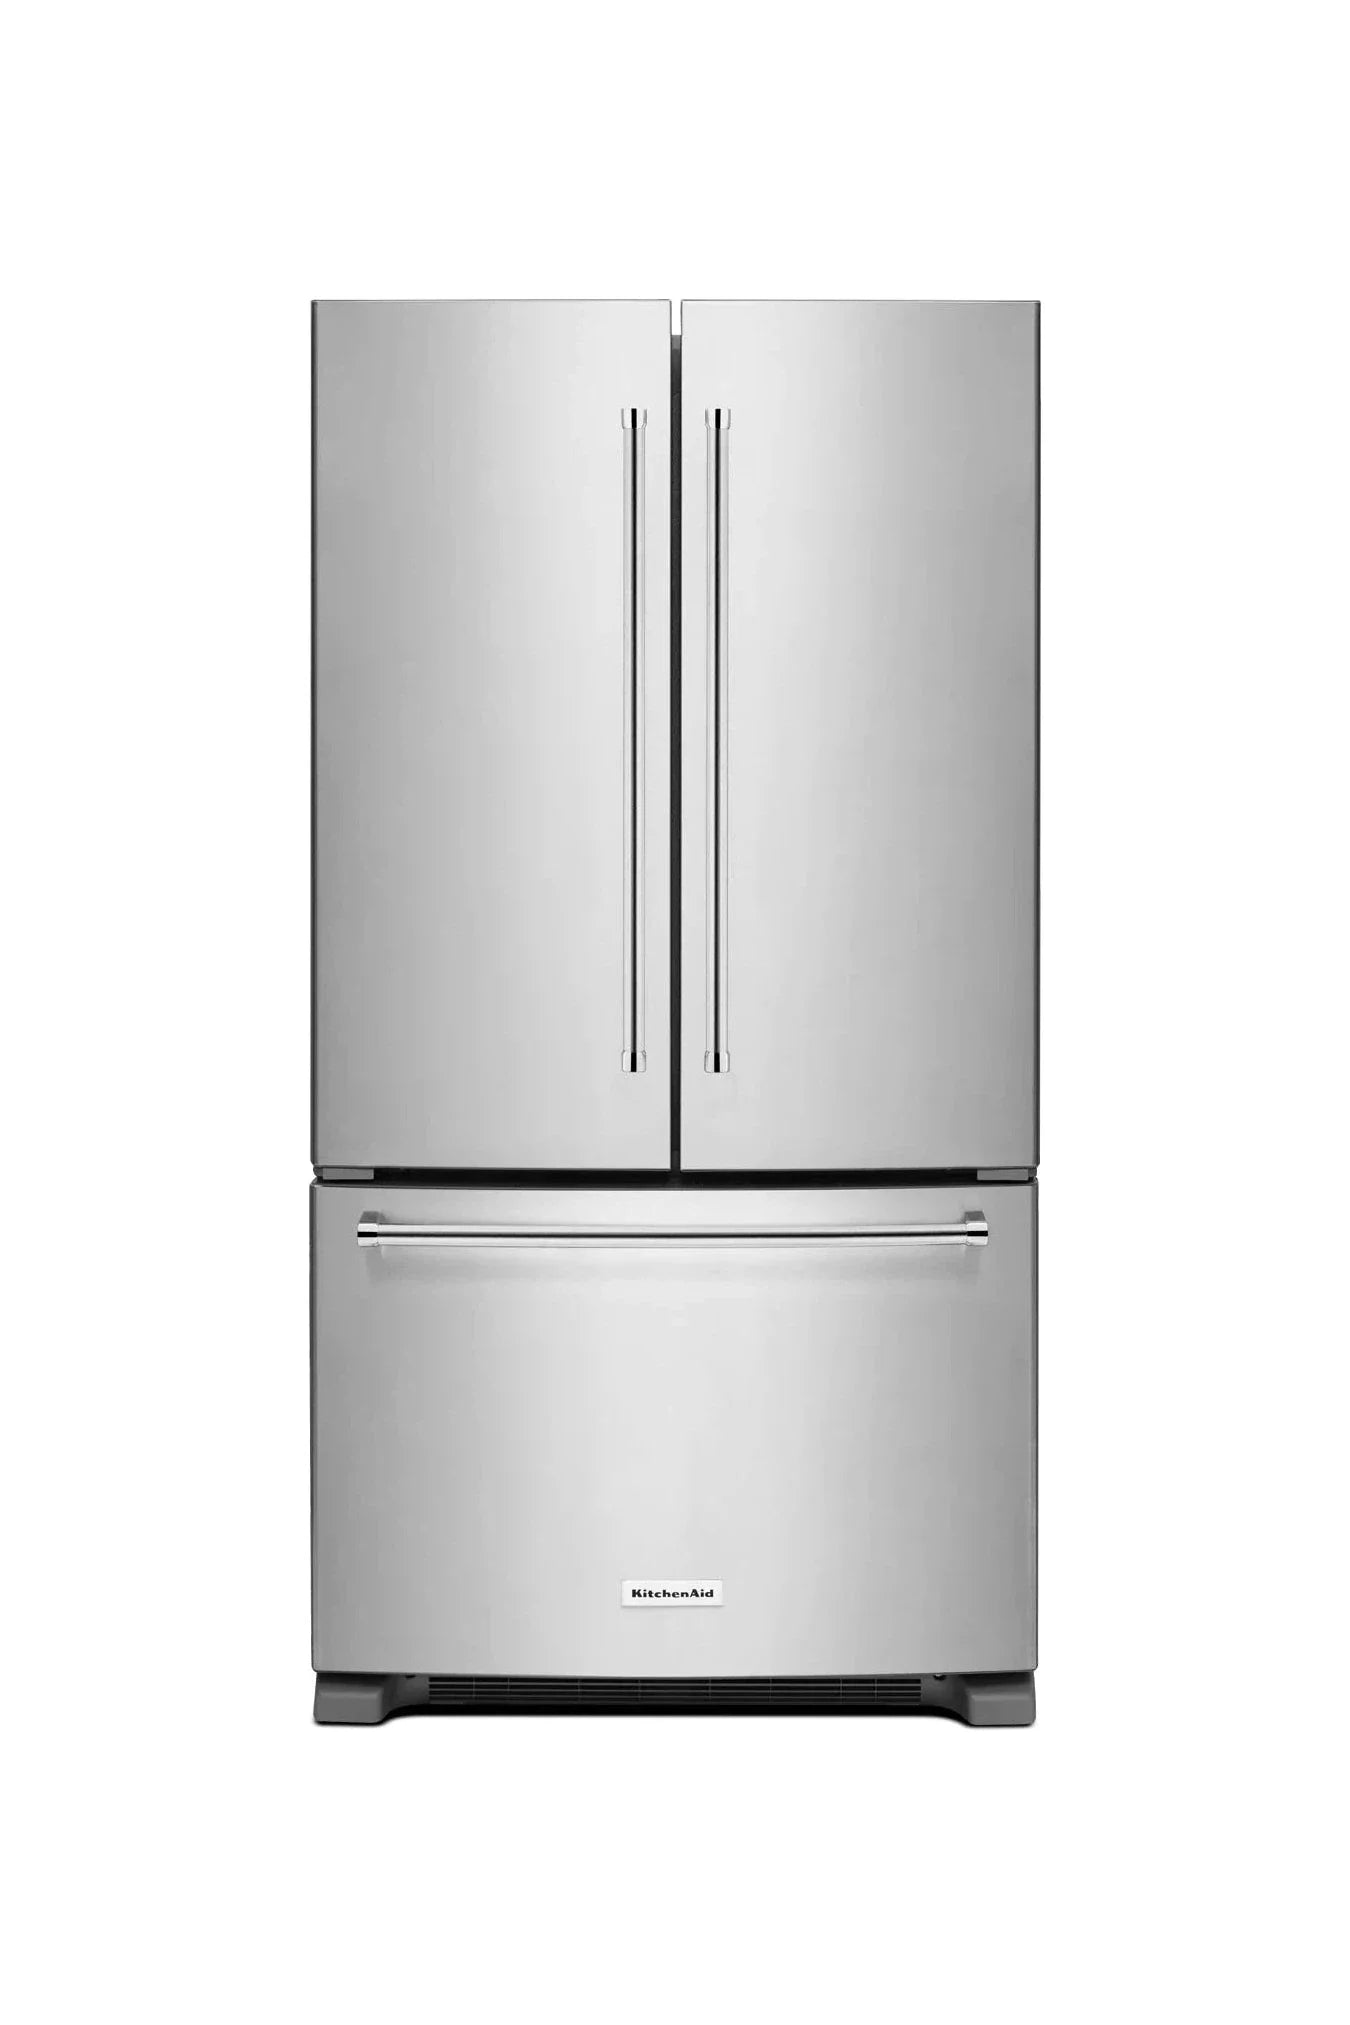 Kitchenaid Refrigerator 36" Stainless Steel KRFC300ESS - Appliance Bazaar